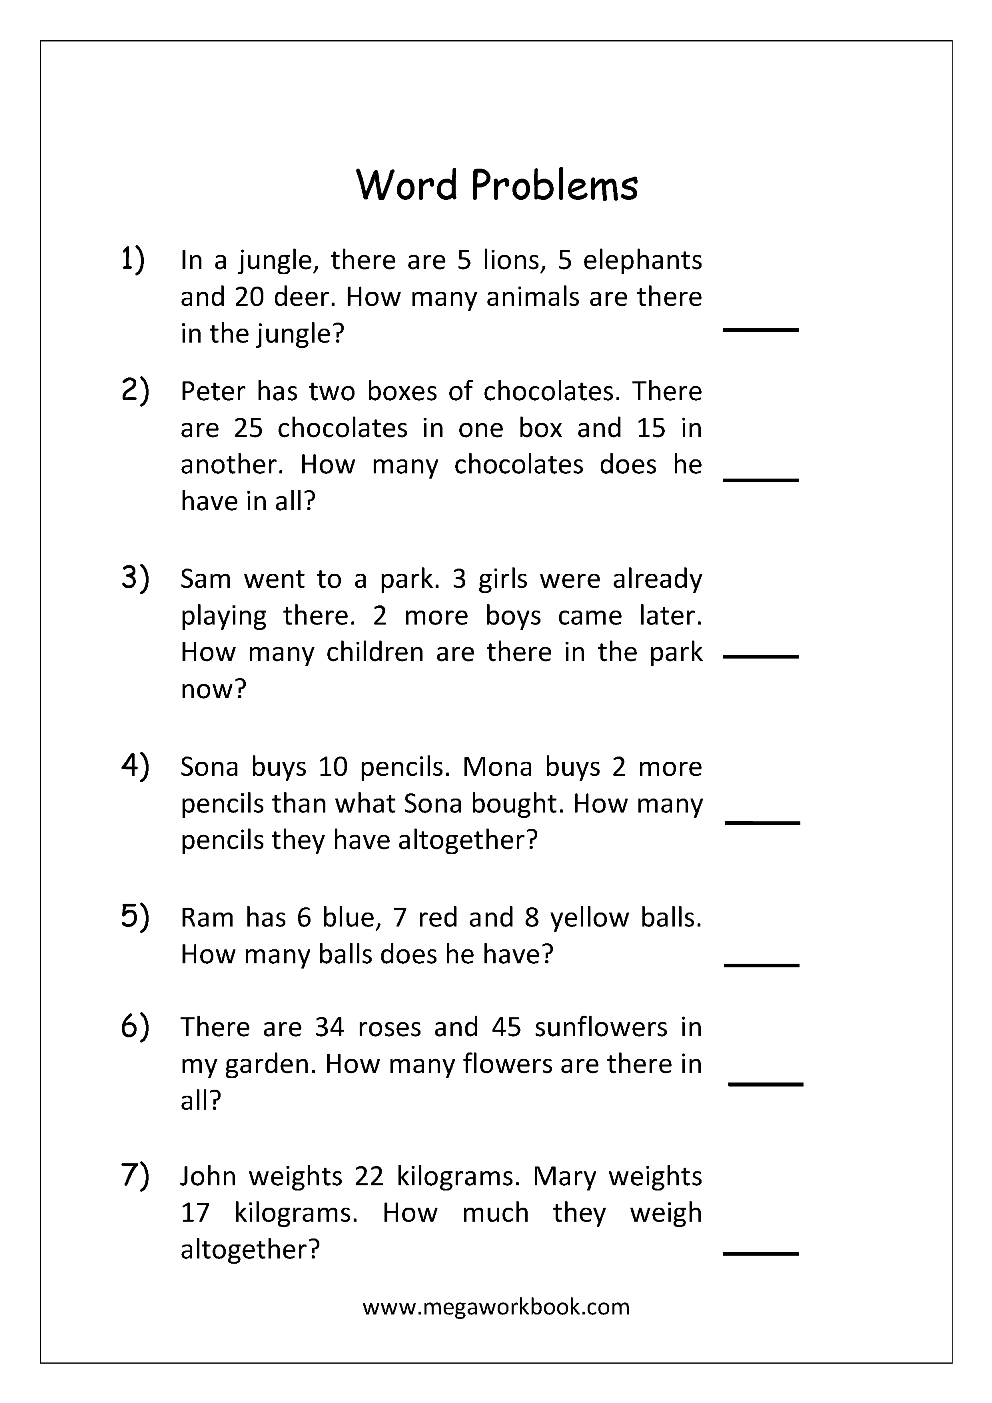 Concept Of Word Activities For Kindergarten